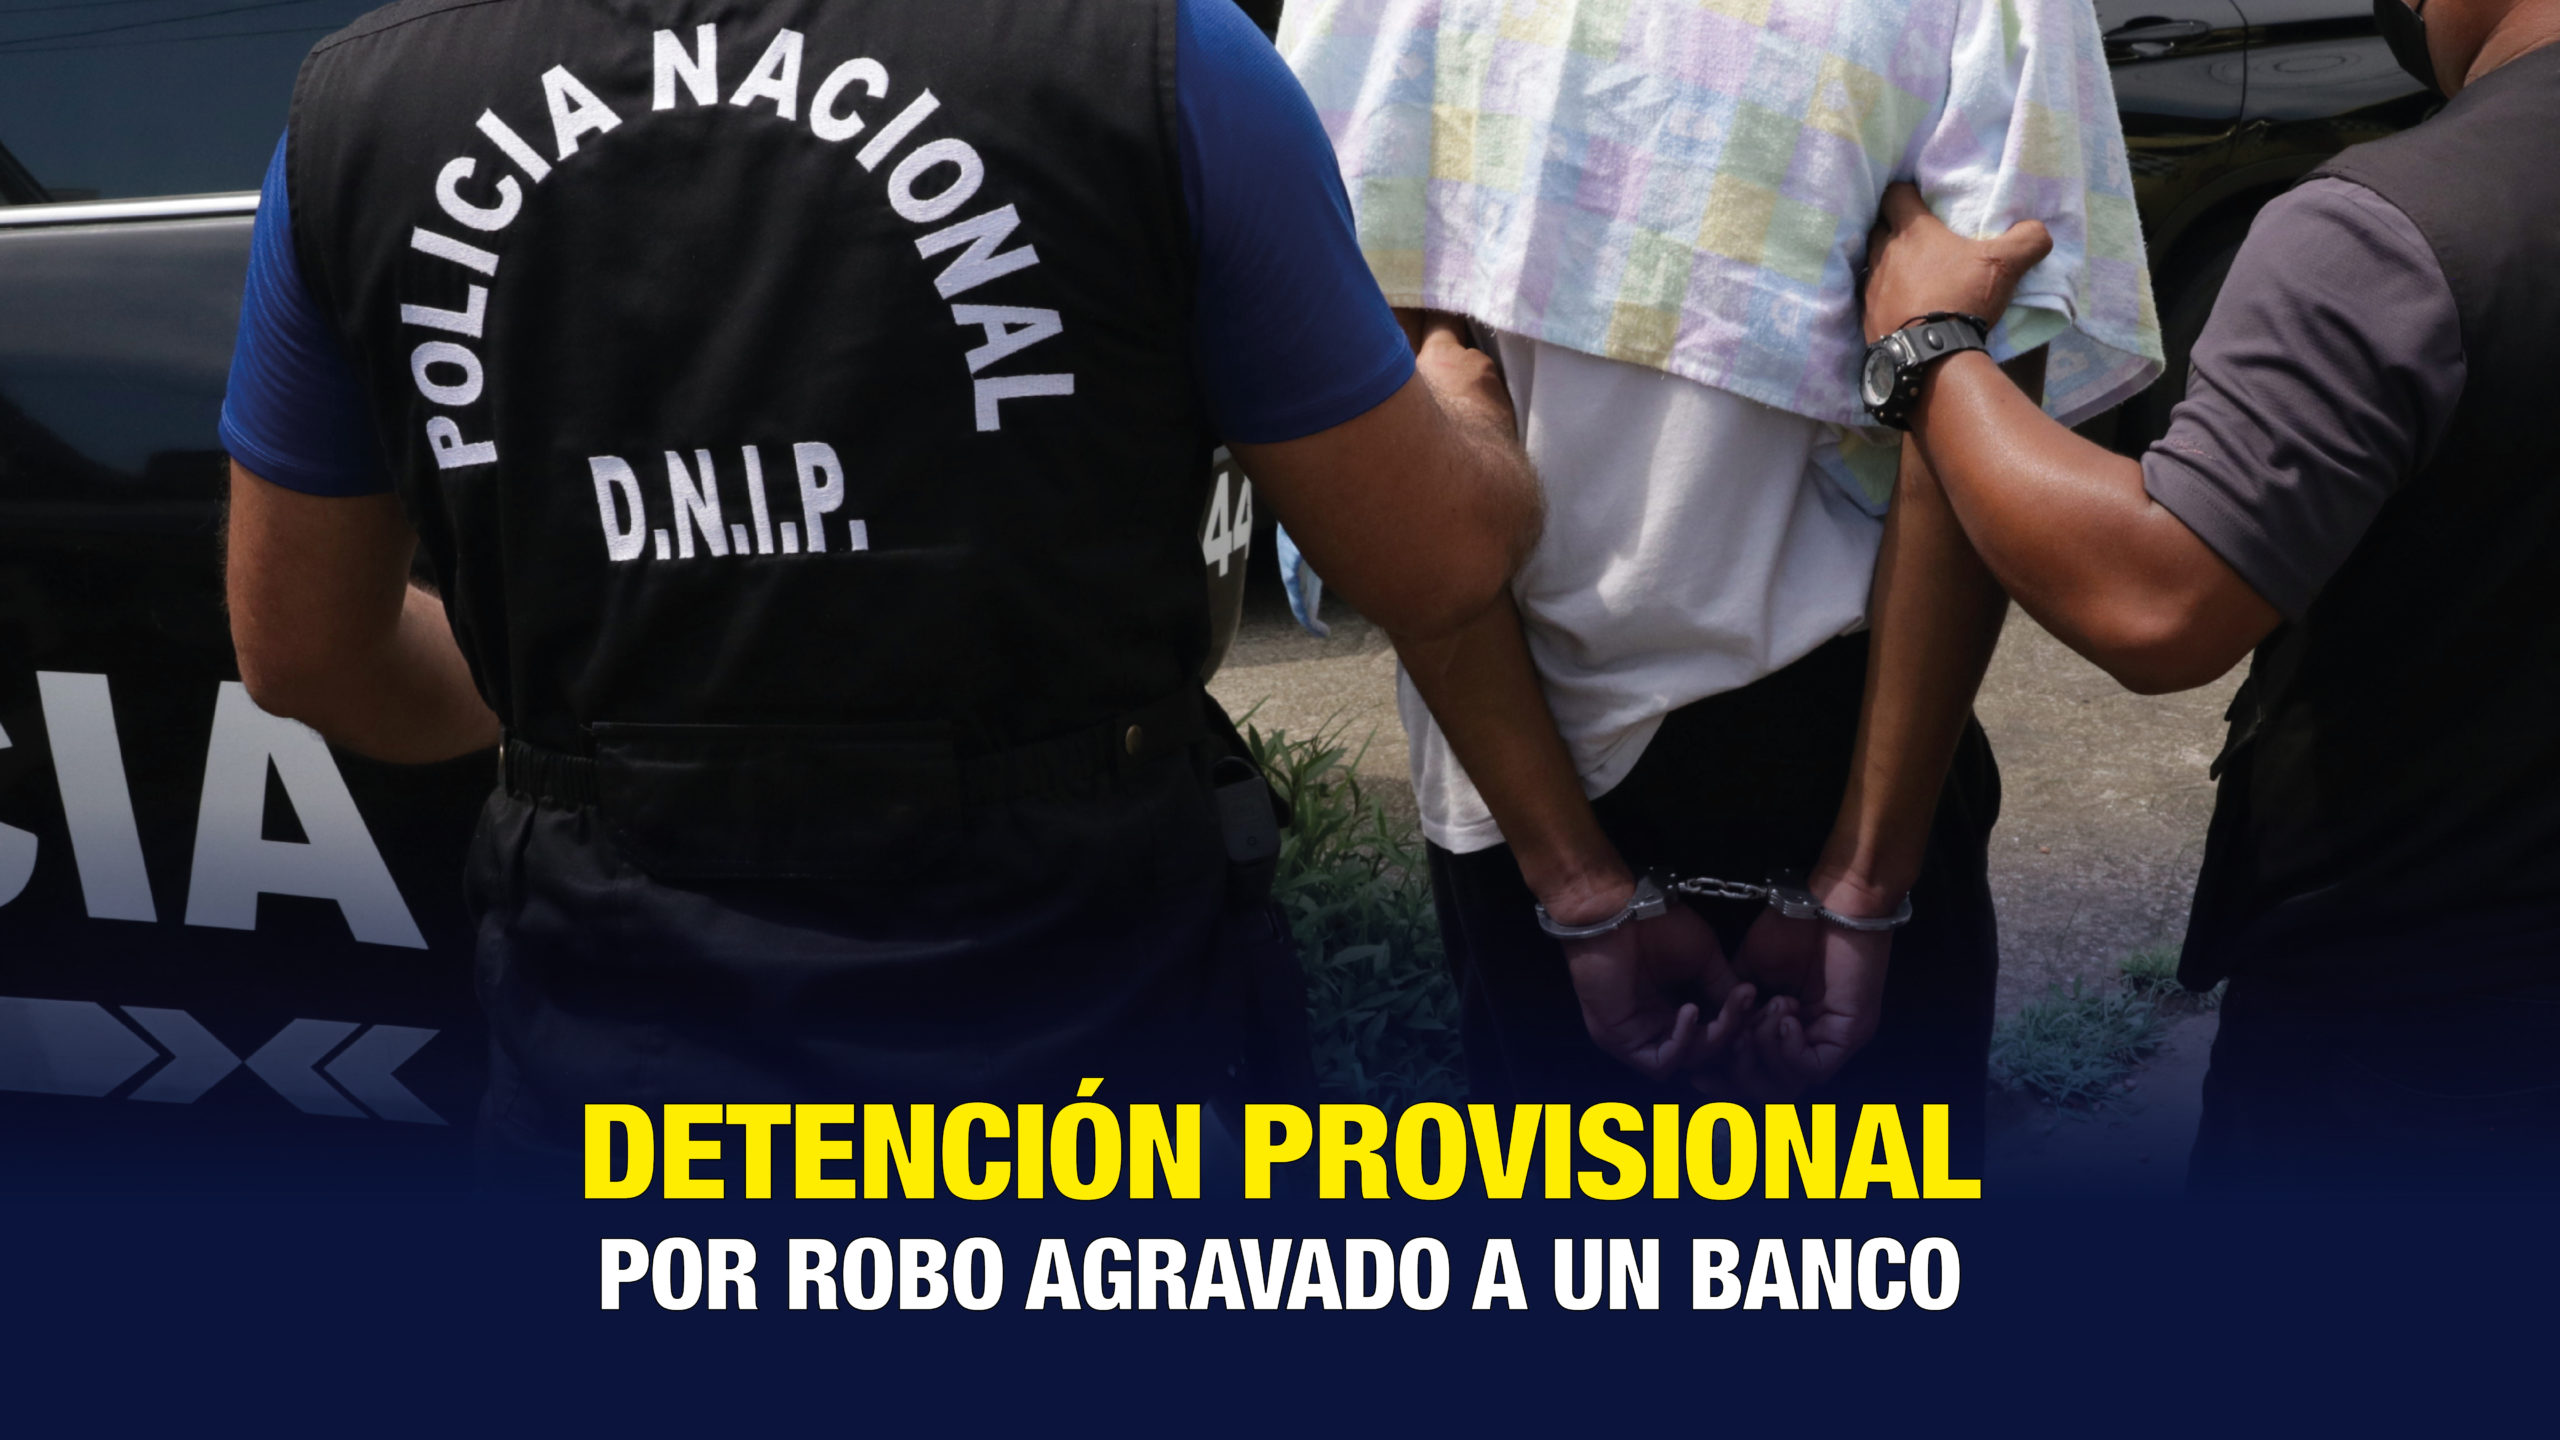 Detención provisional a persona supuestamente vinculada a robo de banco en Calle 50